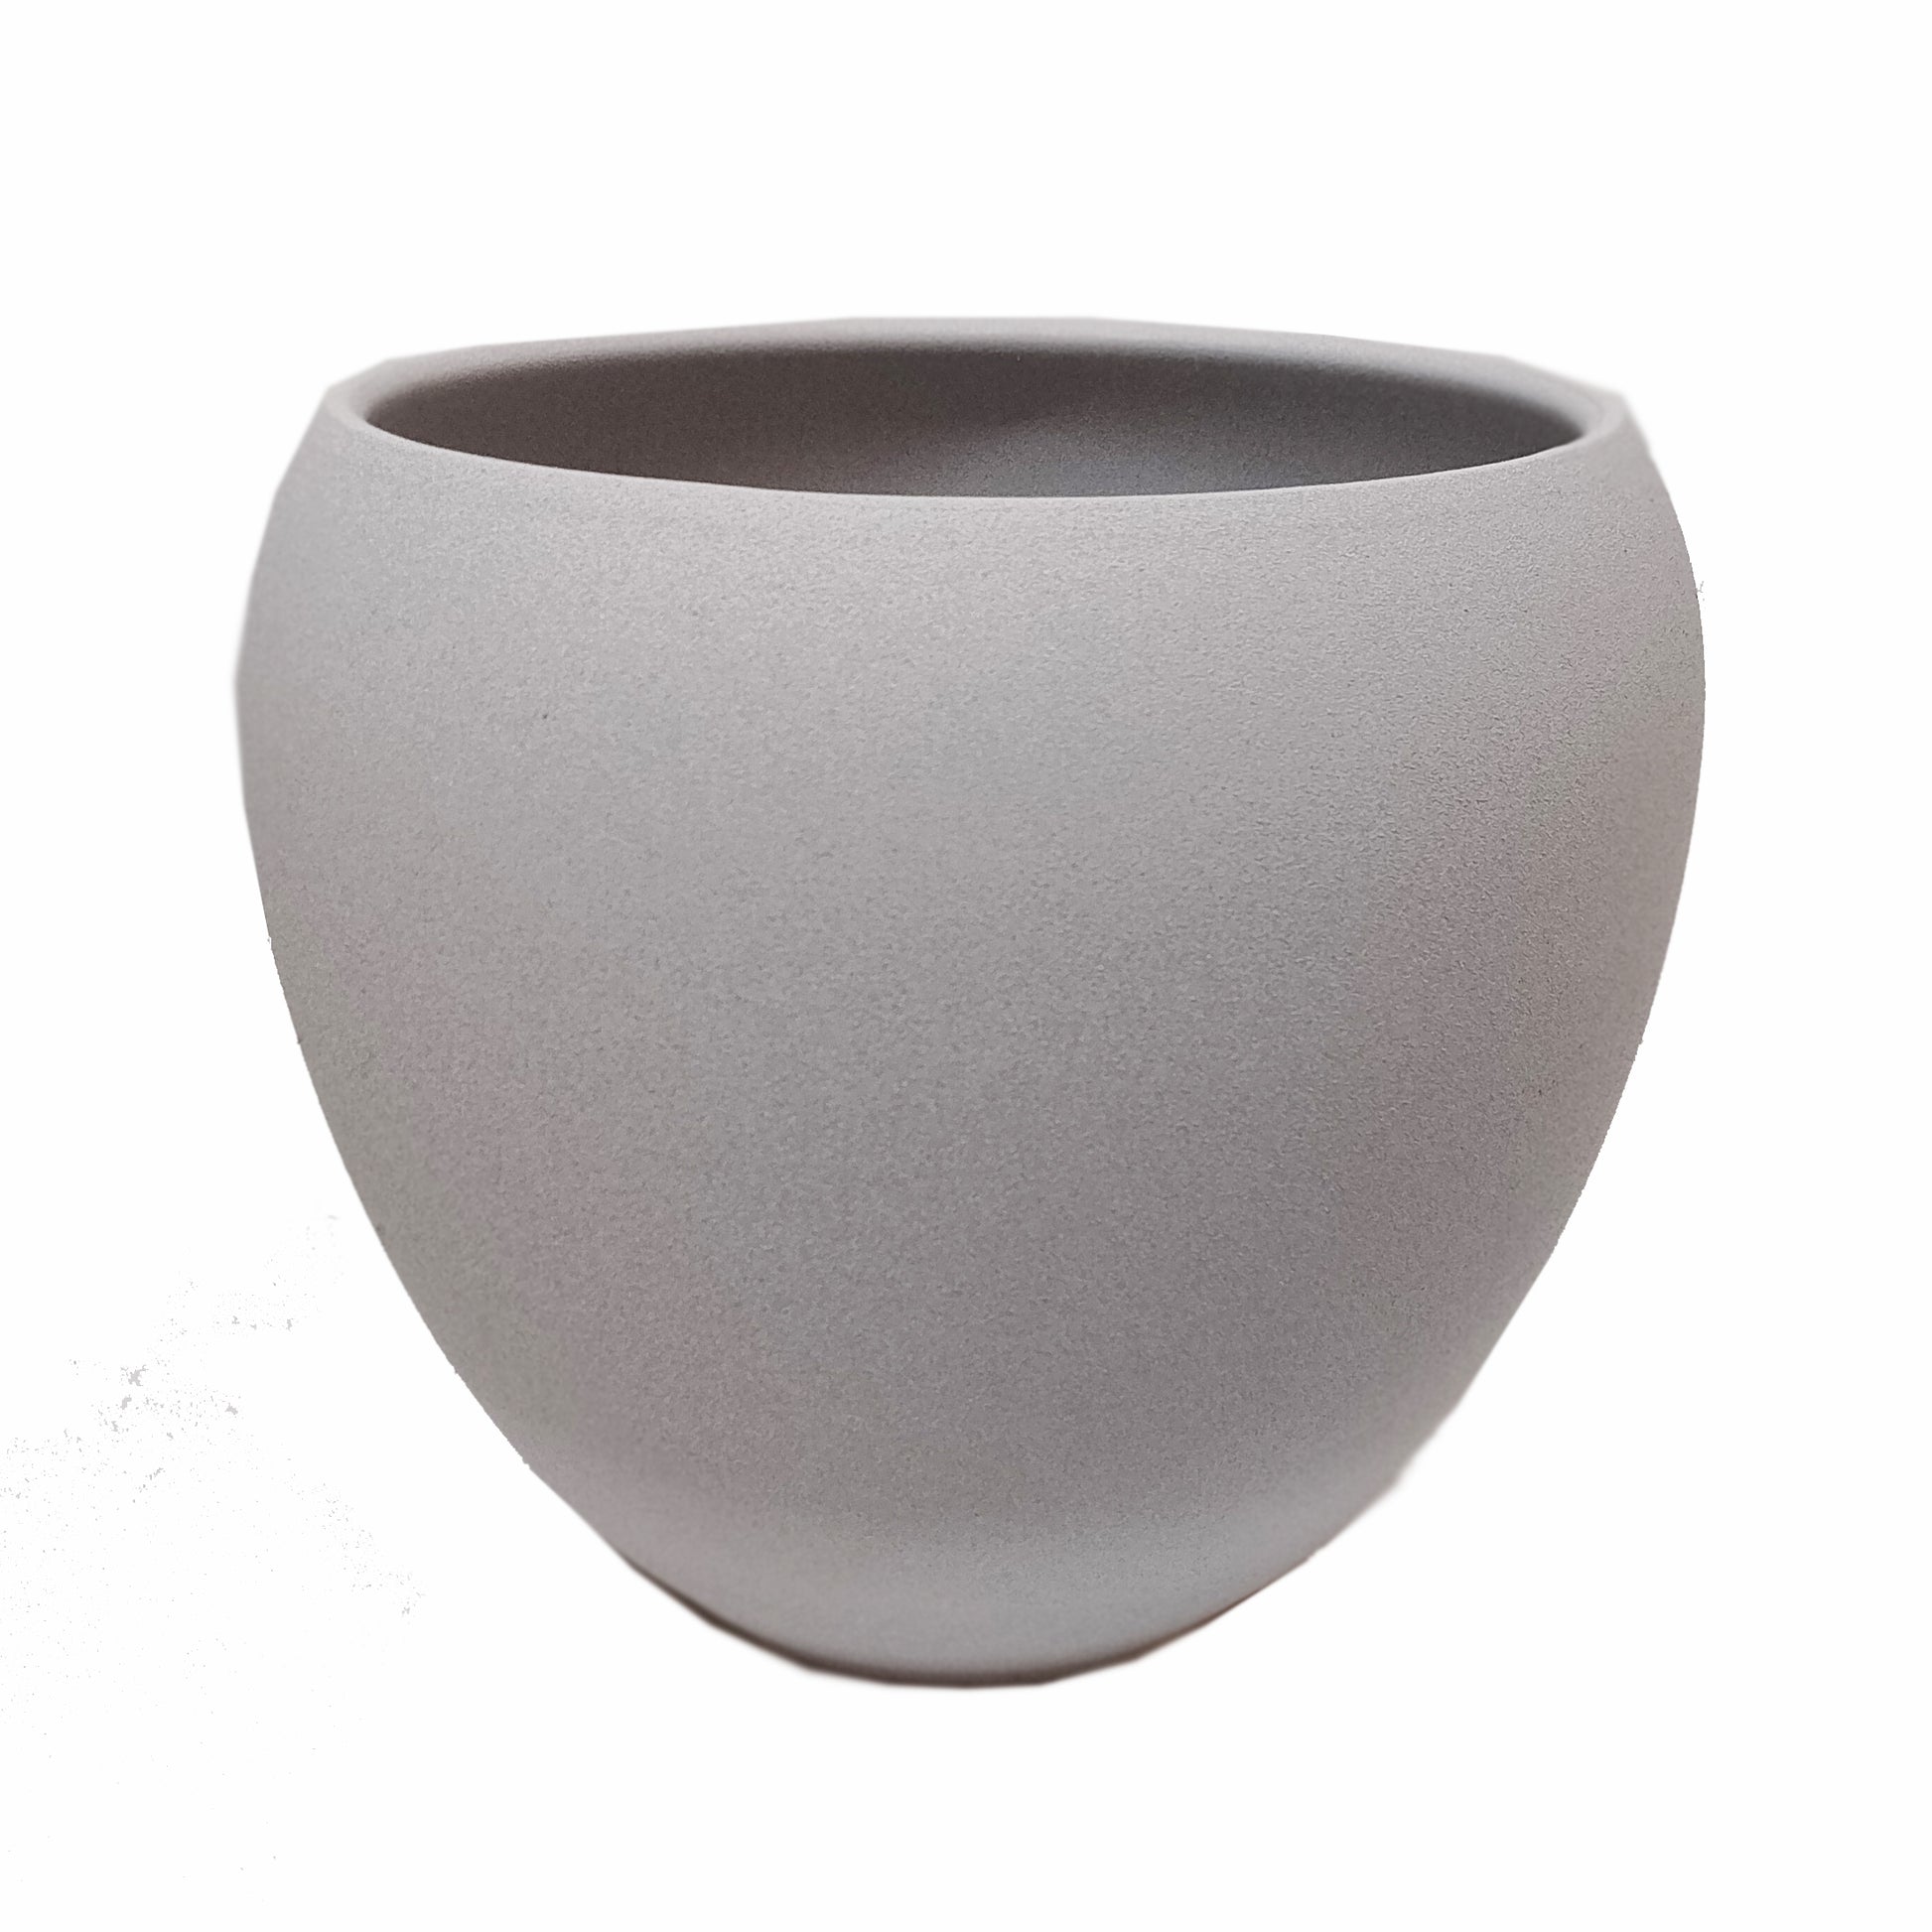 Vinci Grey Rounded Flower Pot